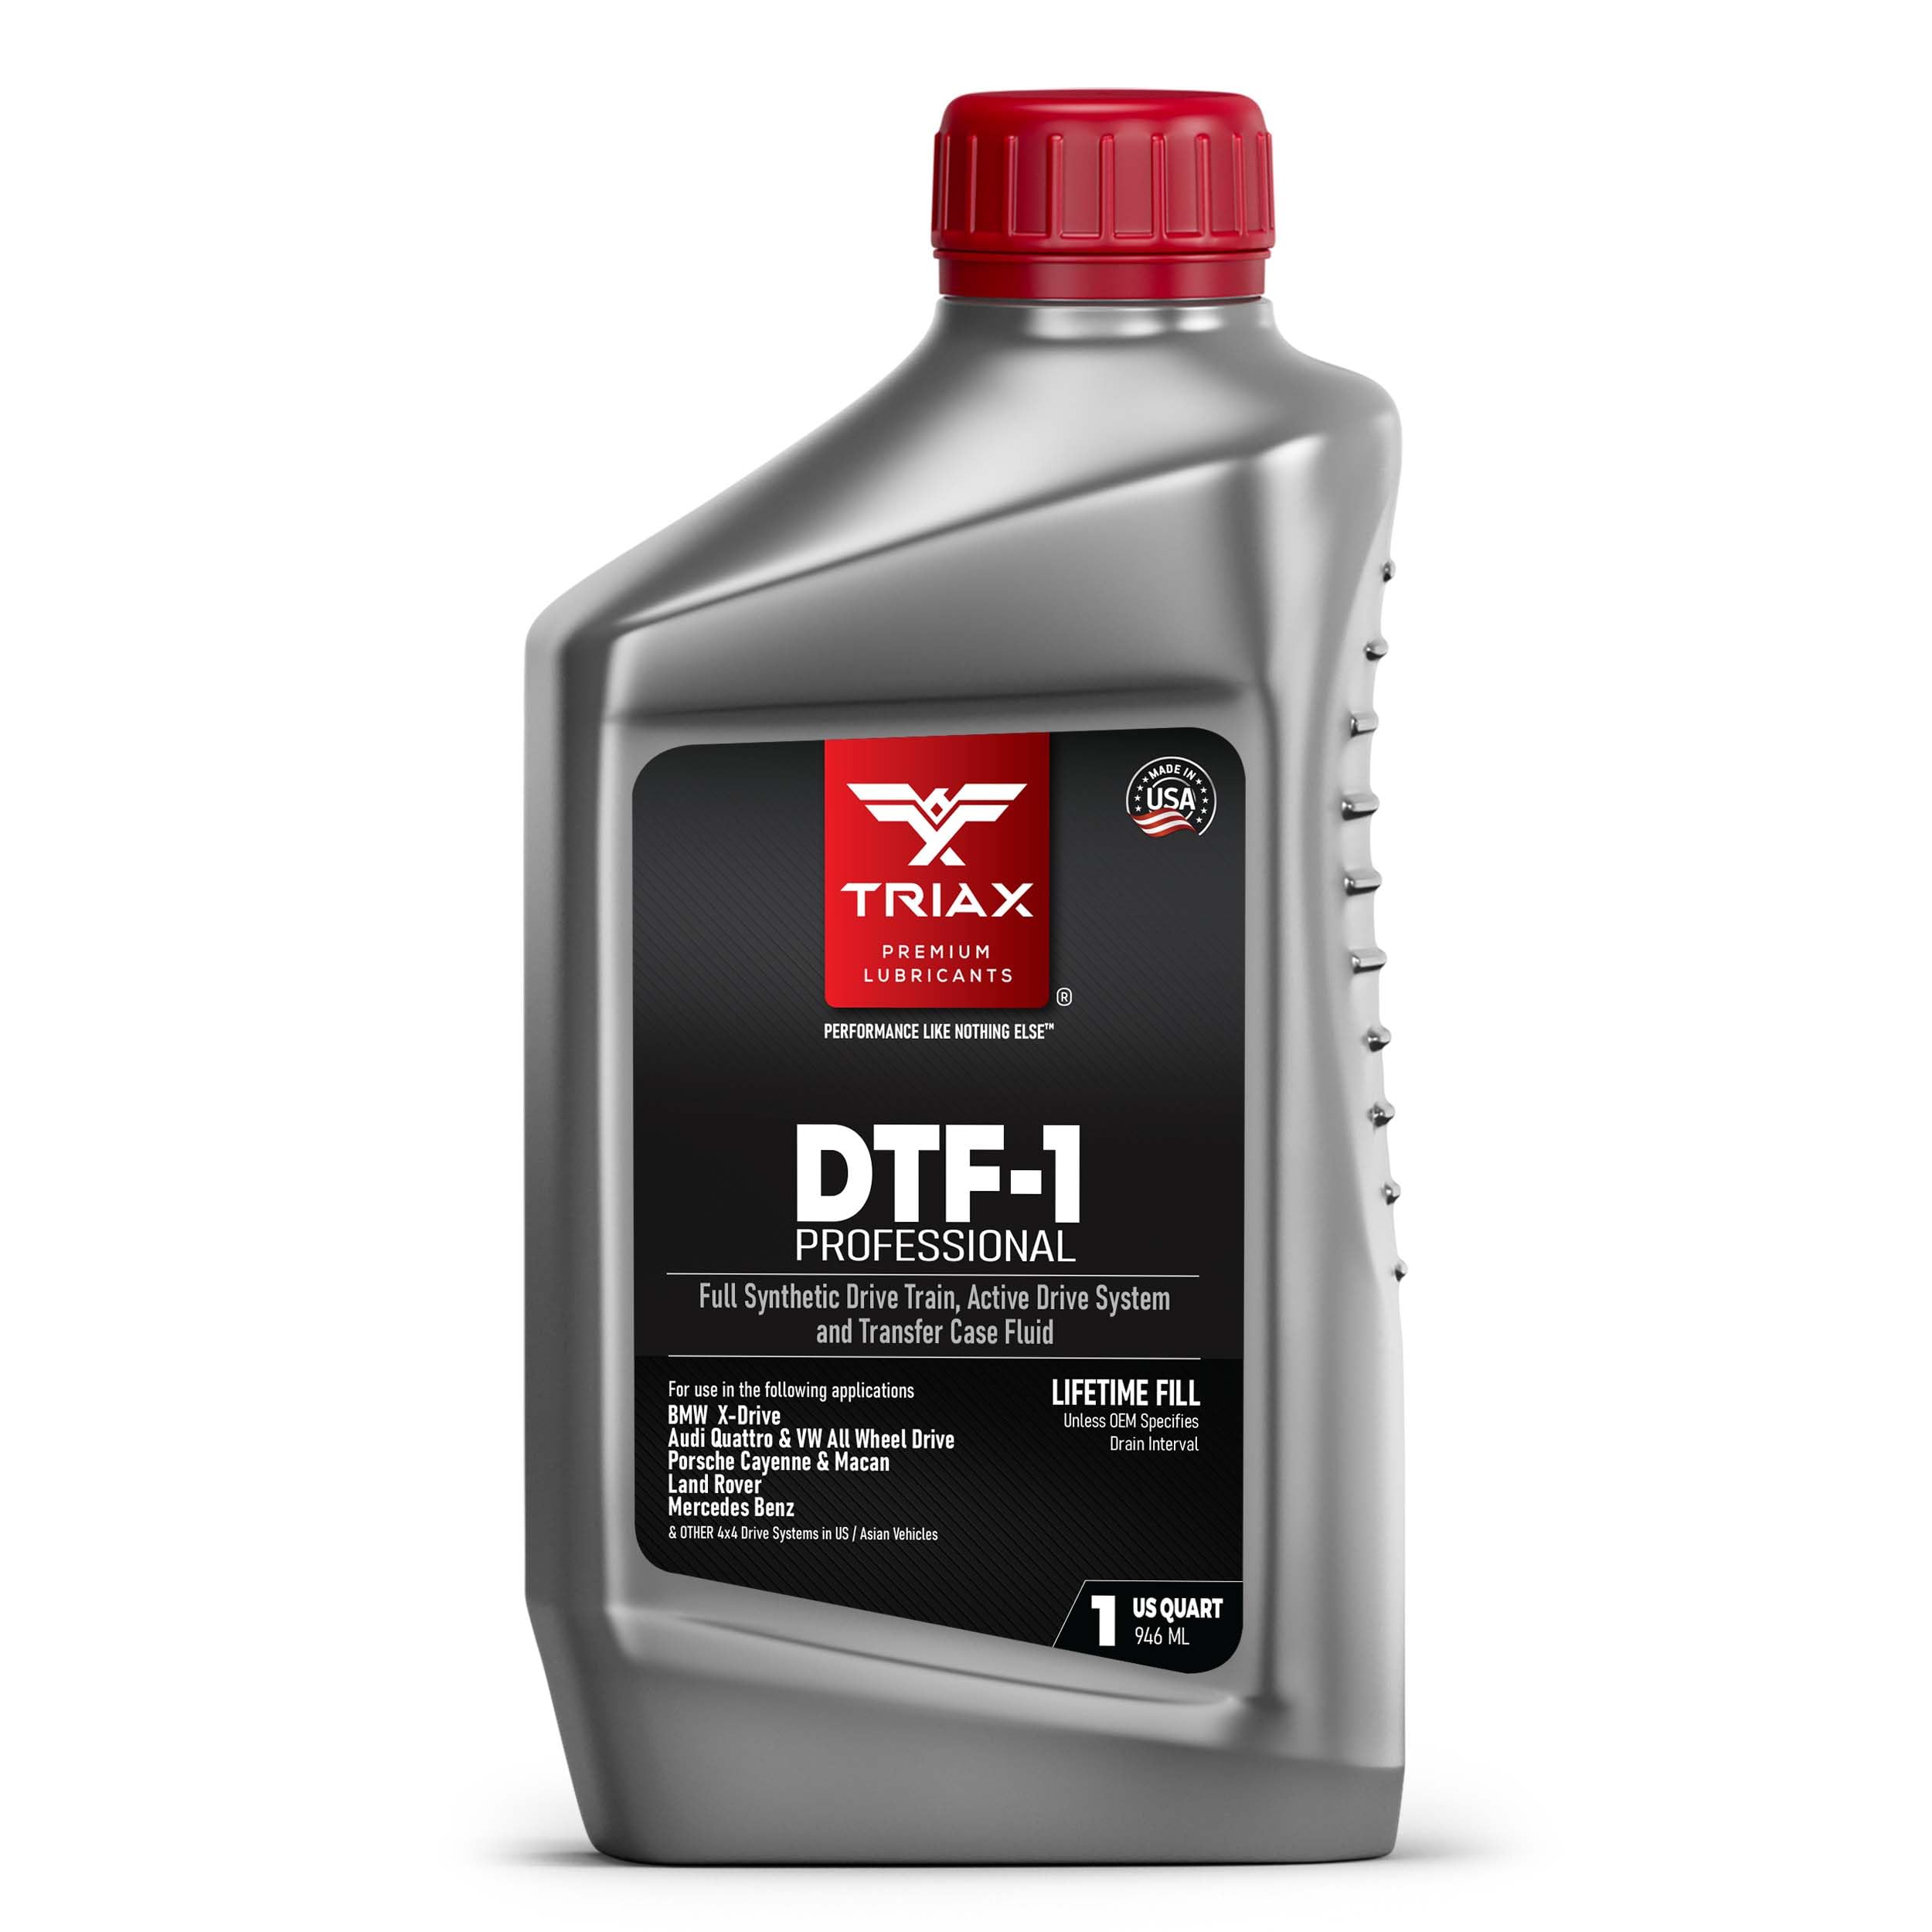 TRIAX DTF-1 Verteilergetriebeöl vollsynthetisch | Lebenslange Füllung | Die ganze Saison bis zu -50 C | Kompatibel mit BMW Xdrive, Audi/VW Quattro, Range Rover, Ford, Porsche und viele andere